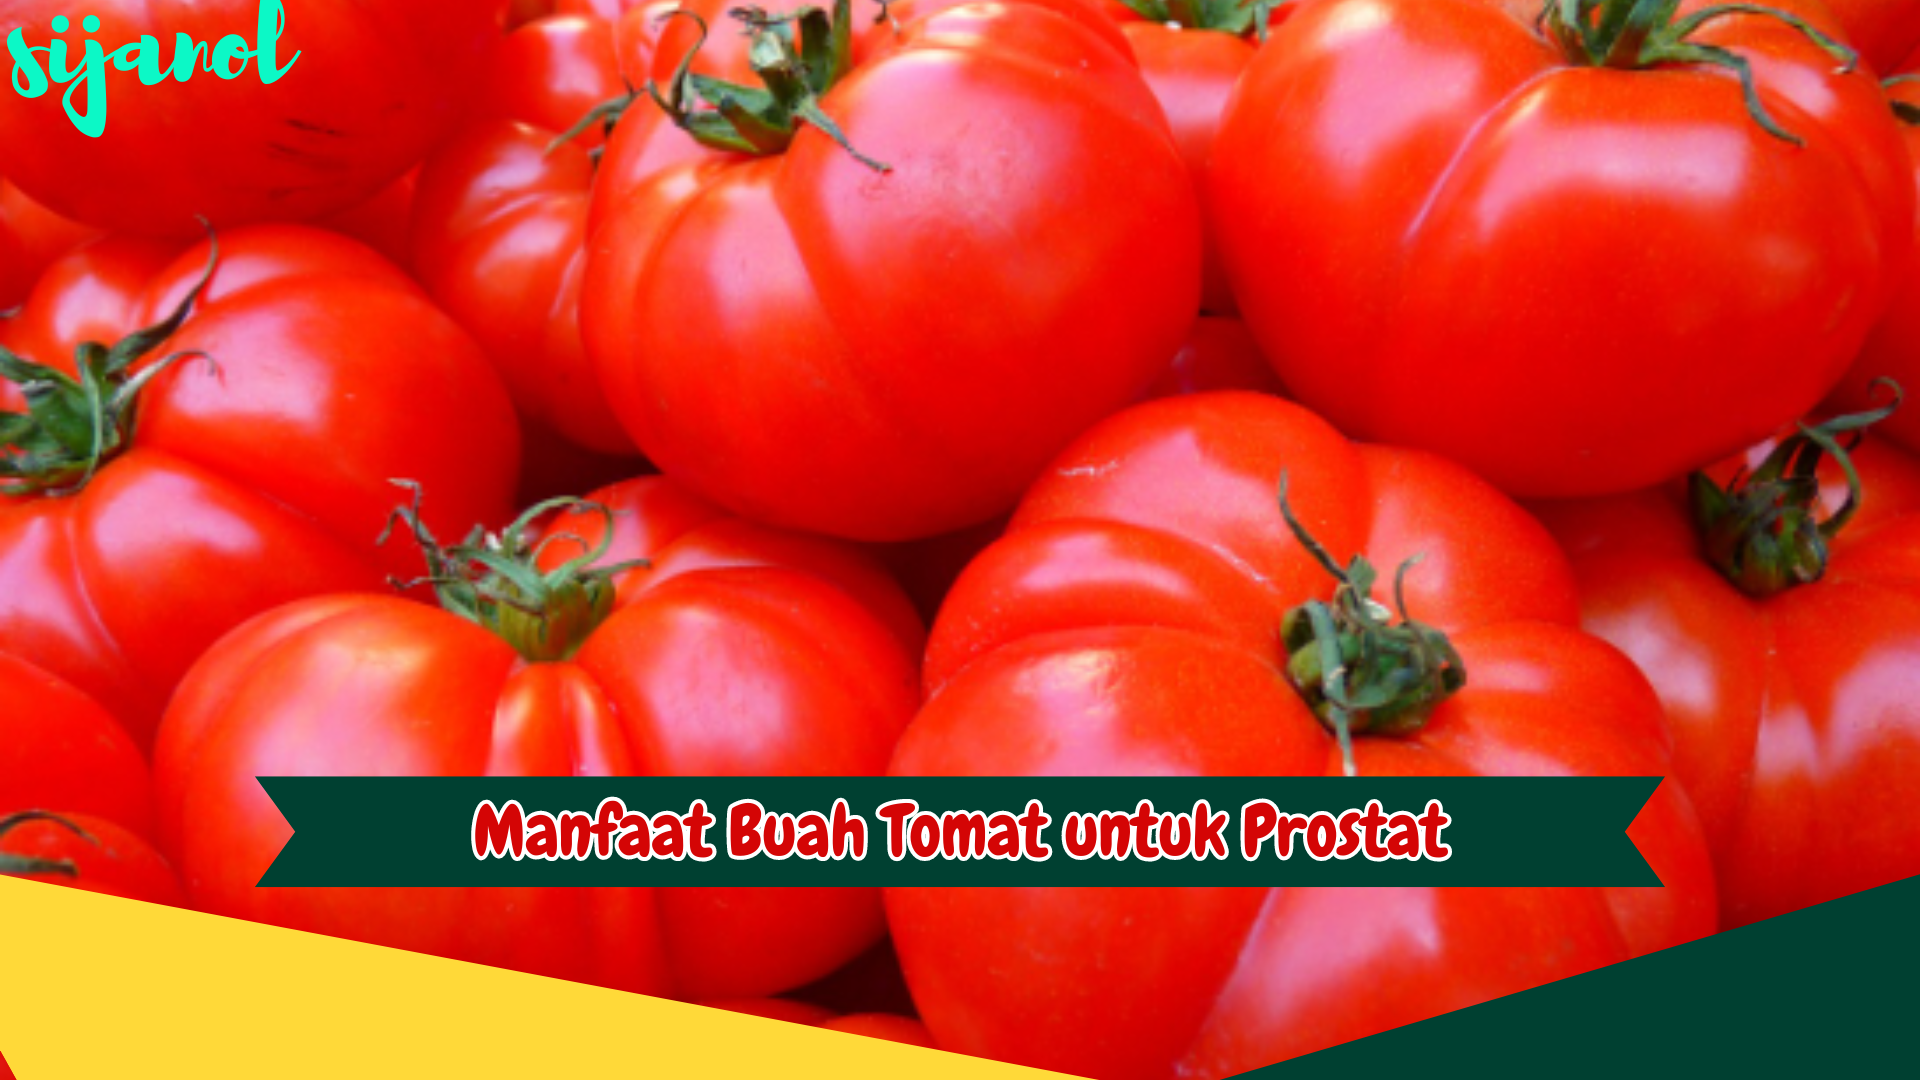 Manfaat Buah Tomat untuk Prostat